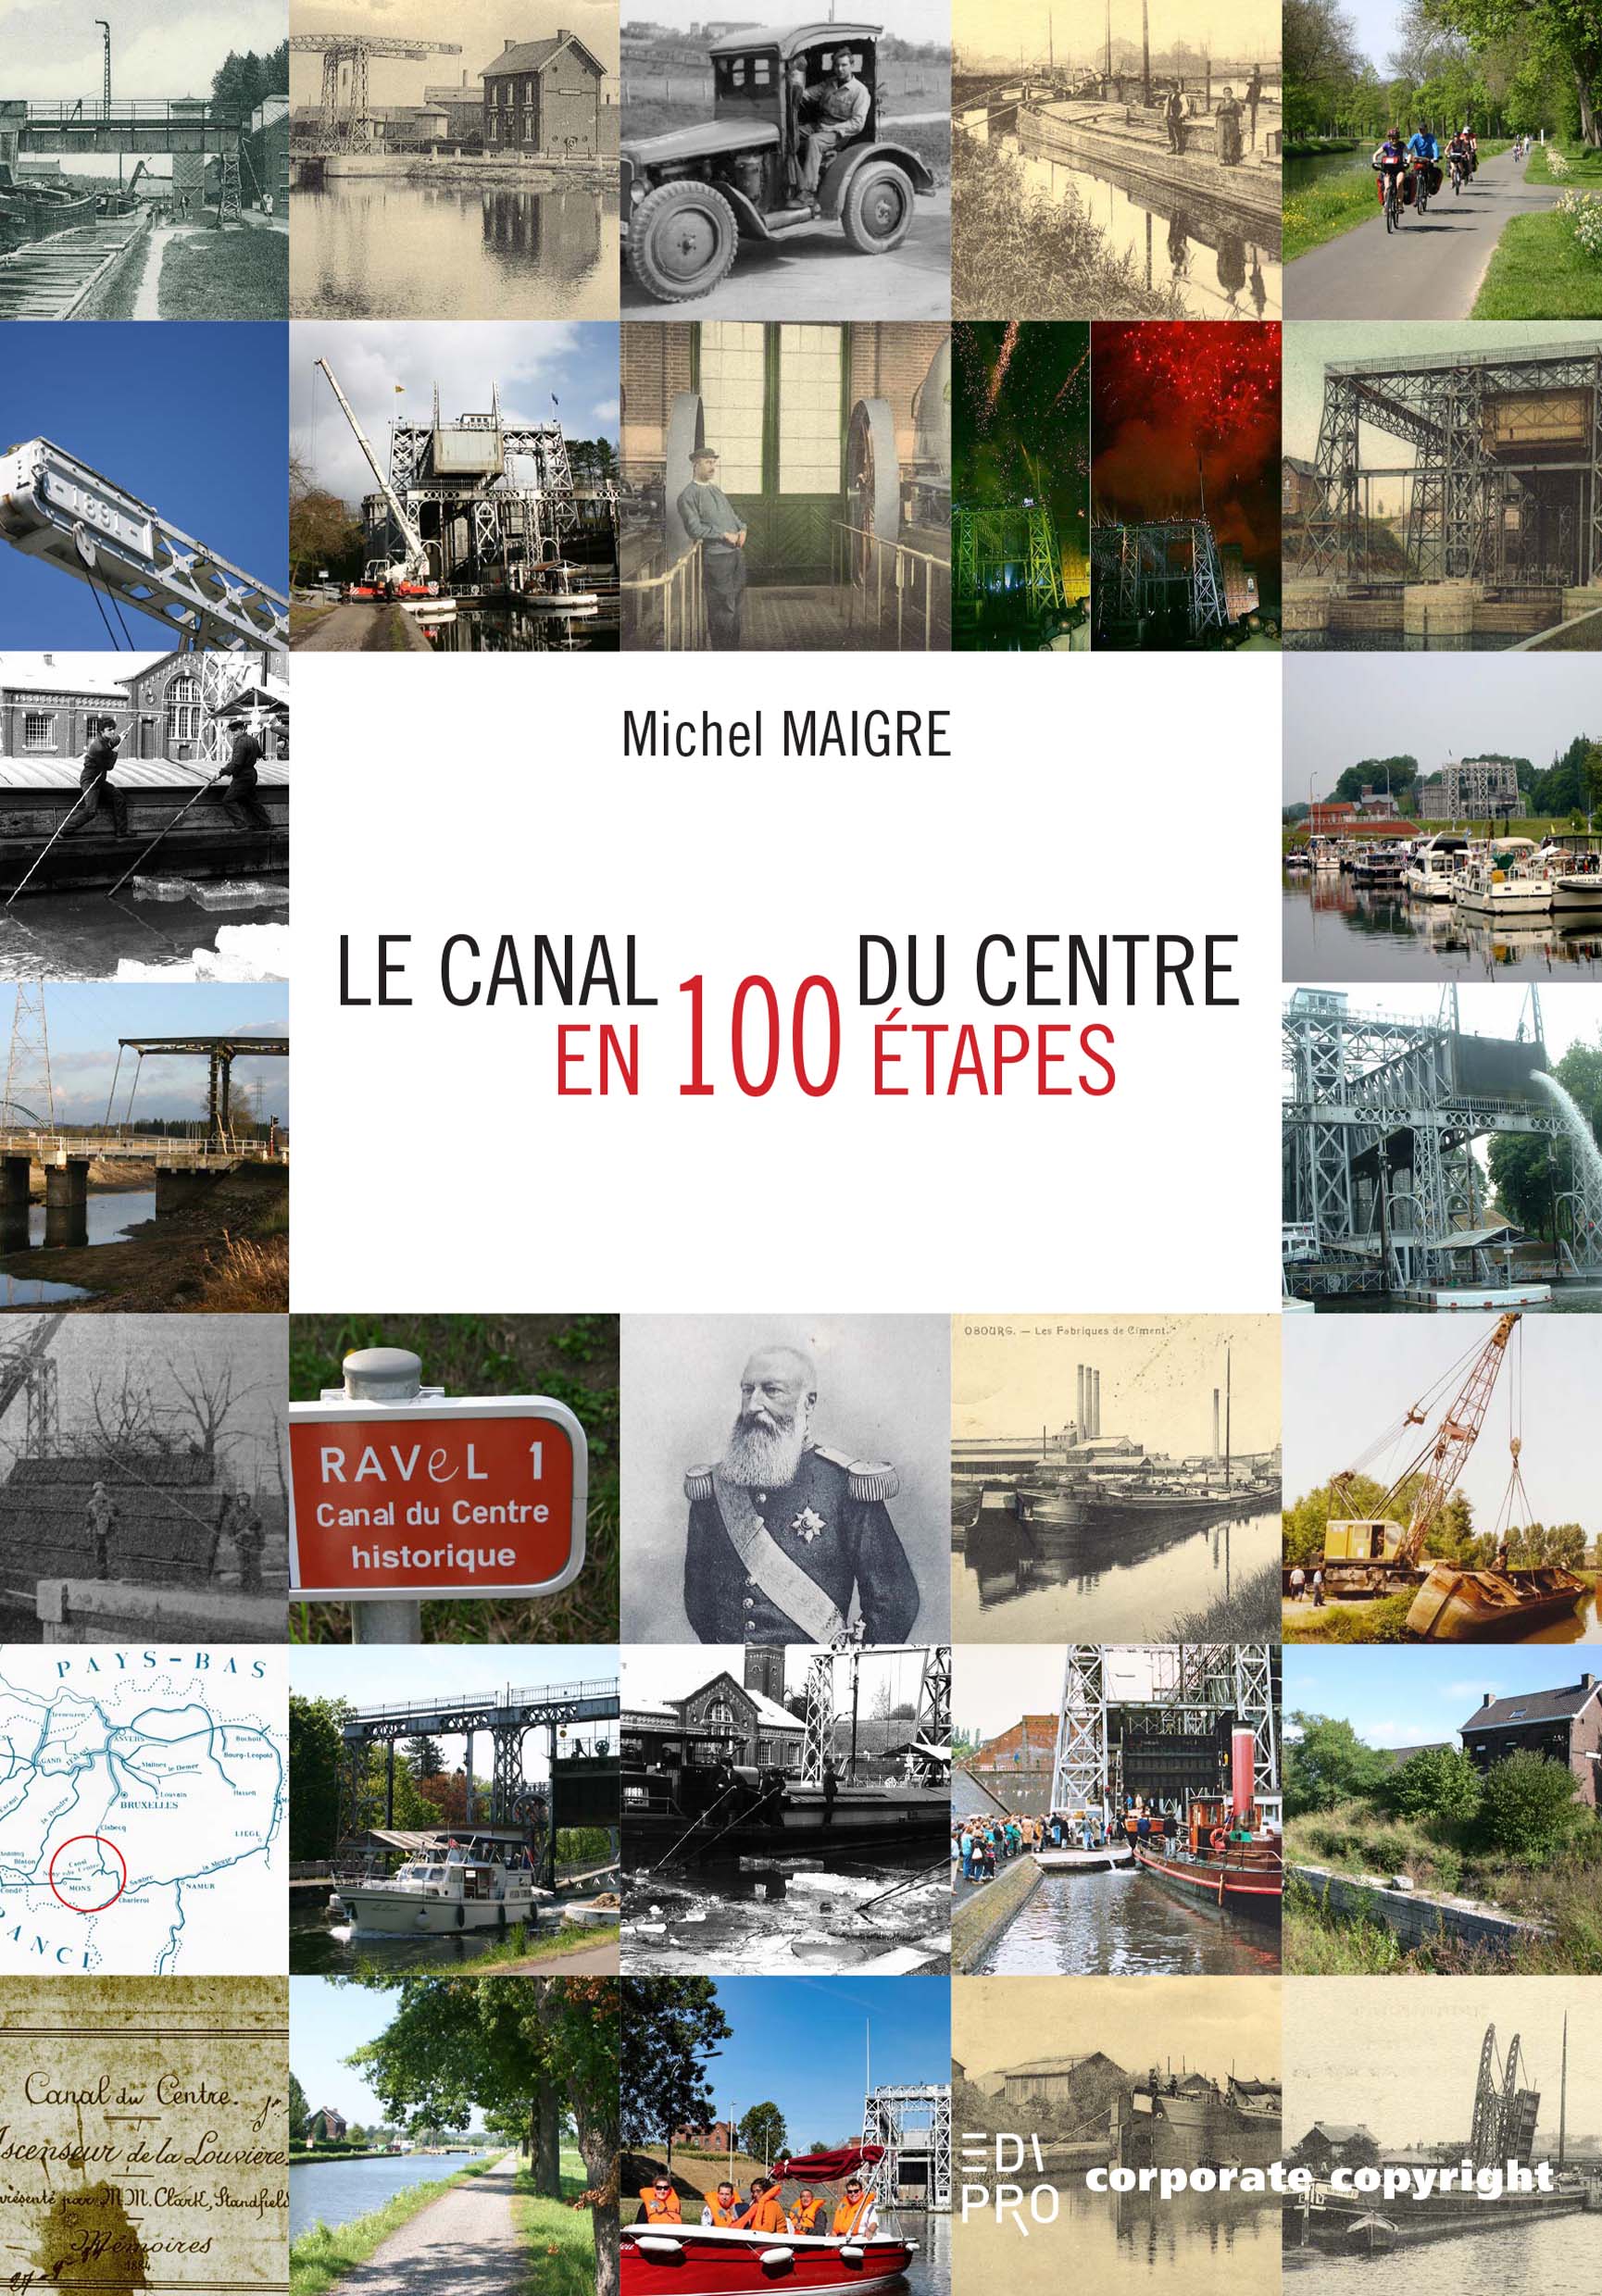 Le Canal du Centre en 100 étapes